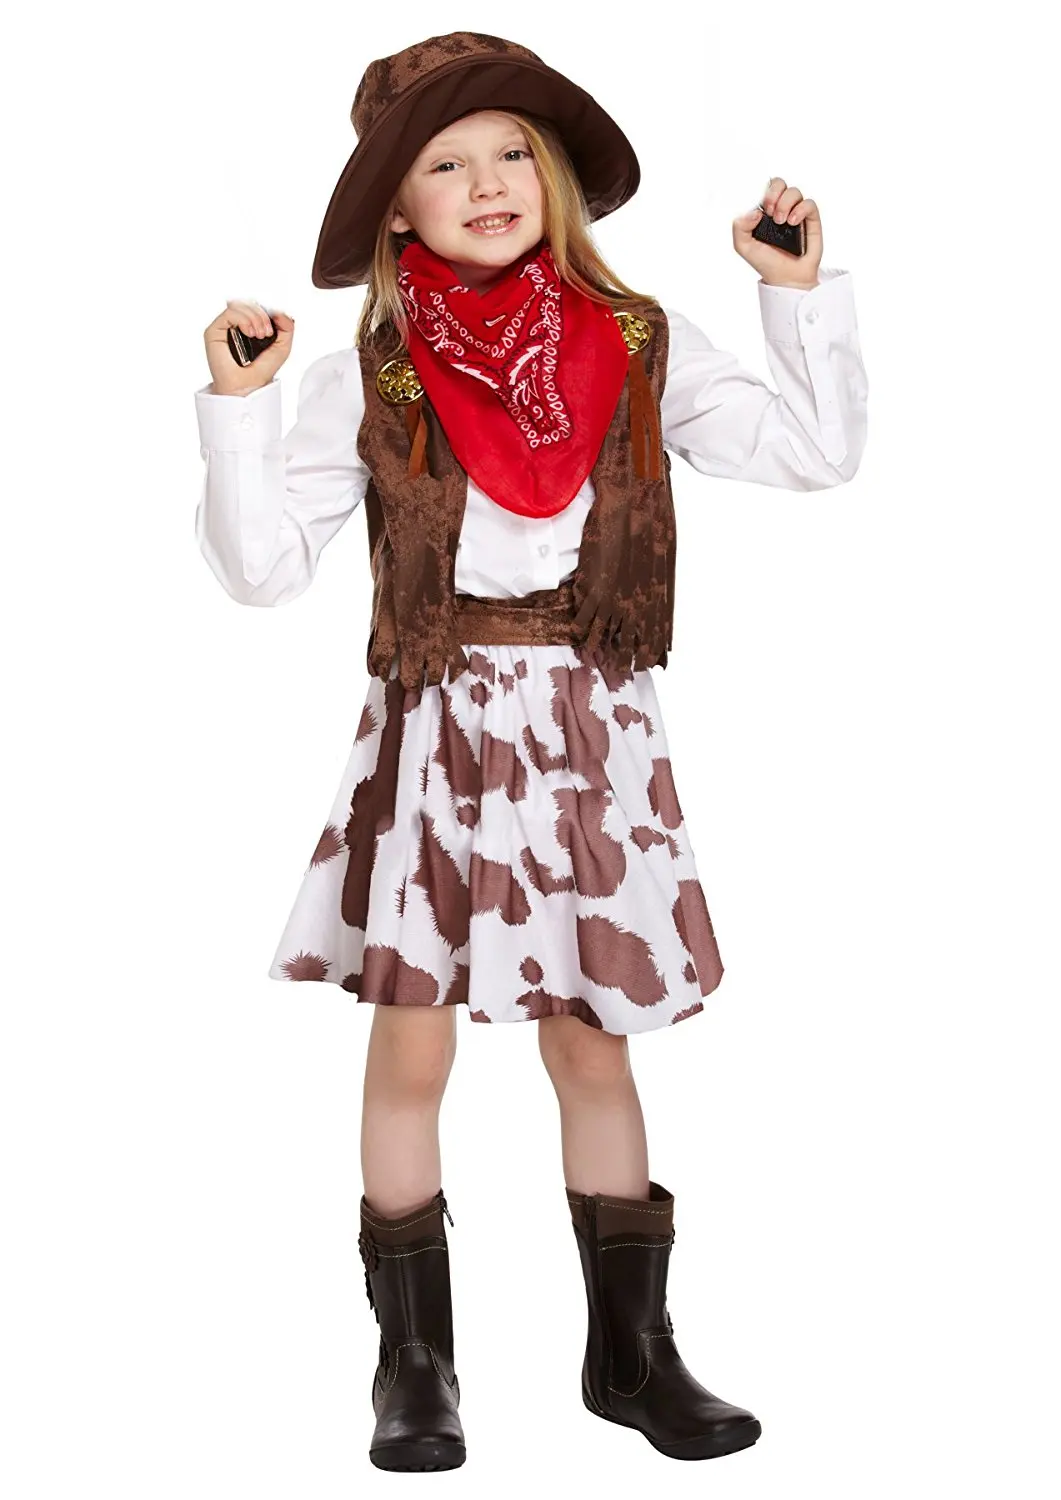 cowgirl attire for kids